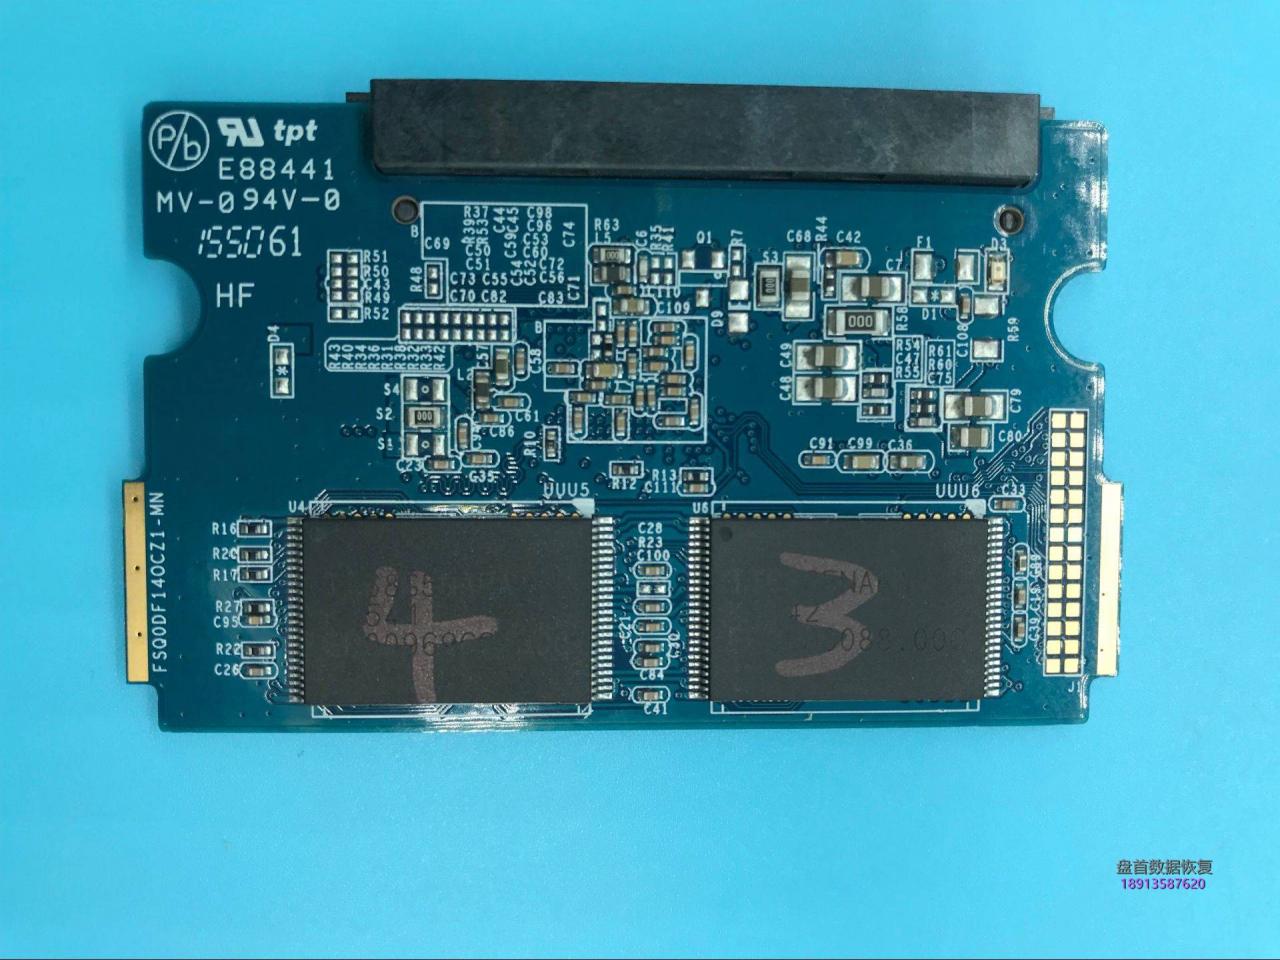 PS3109主控影驰120G固态硬盘损坏进行芯片级数据恢复成功